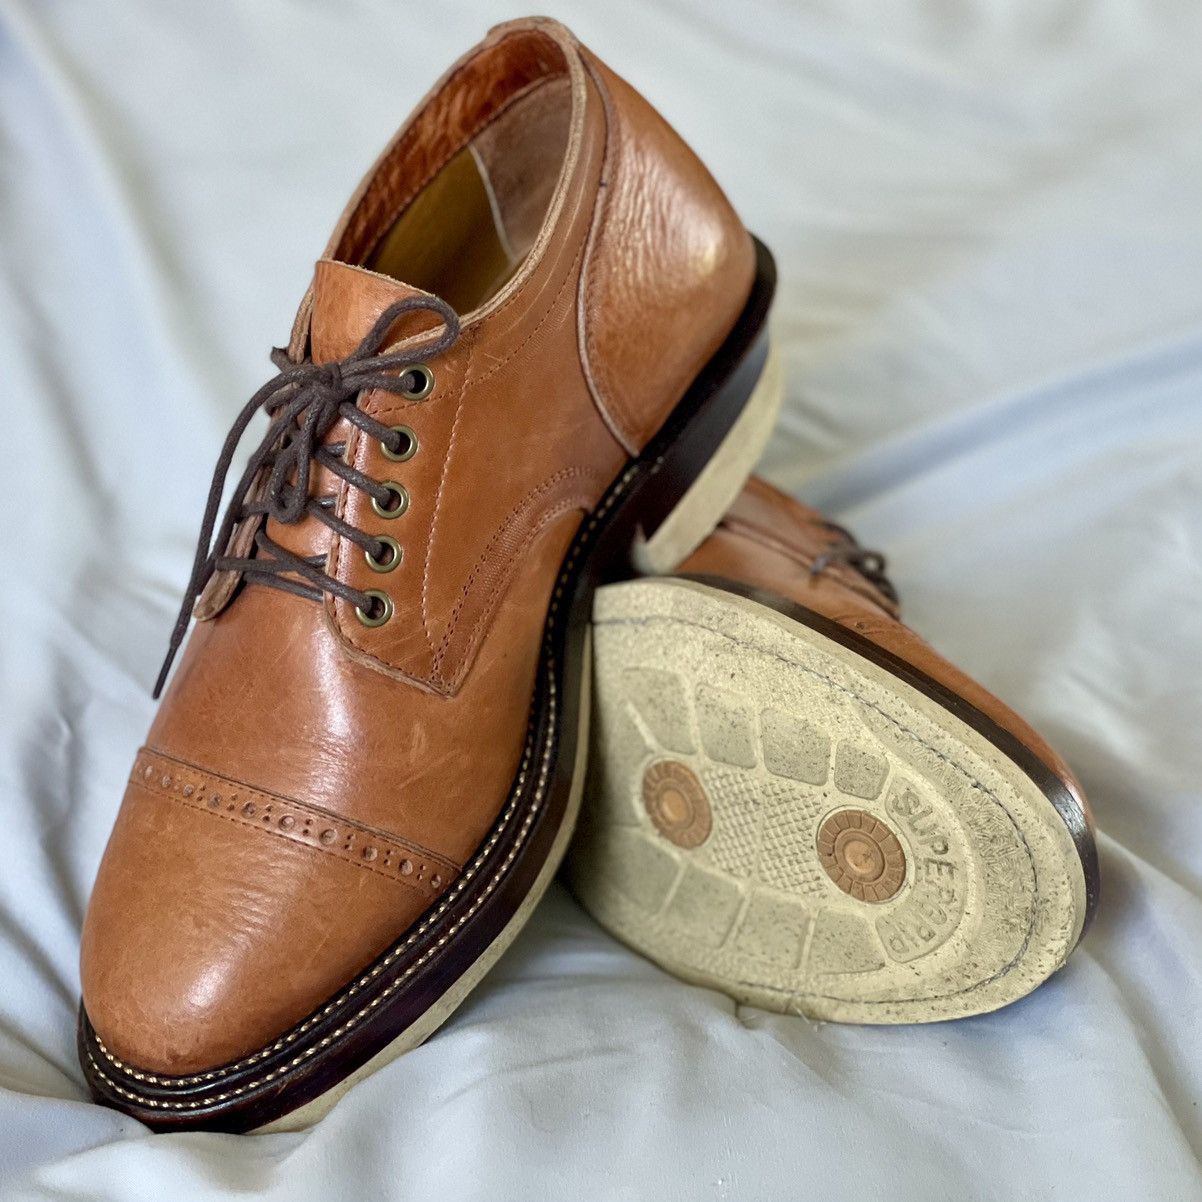 Alden Tahura Boots Company Captoelari Size US 10 / EU 43 - 1 Preview